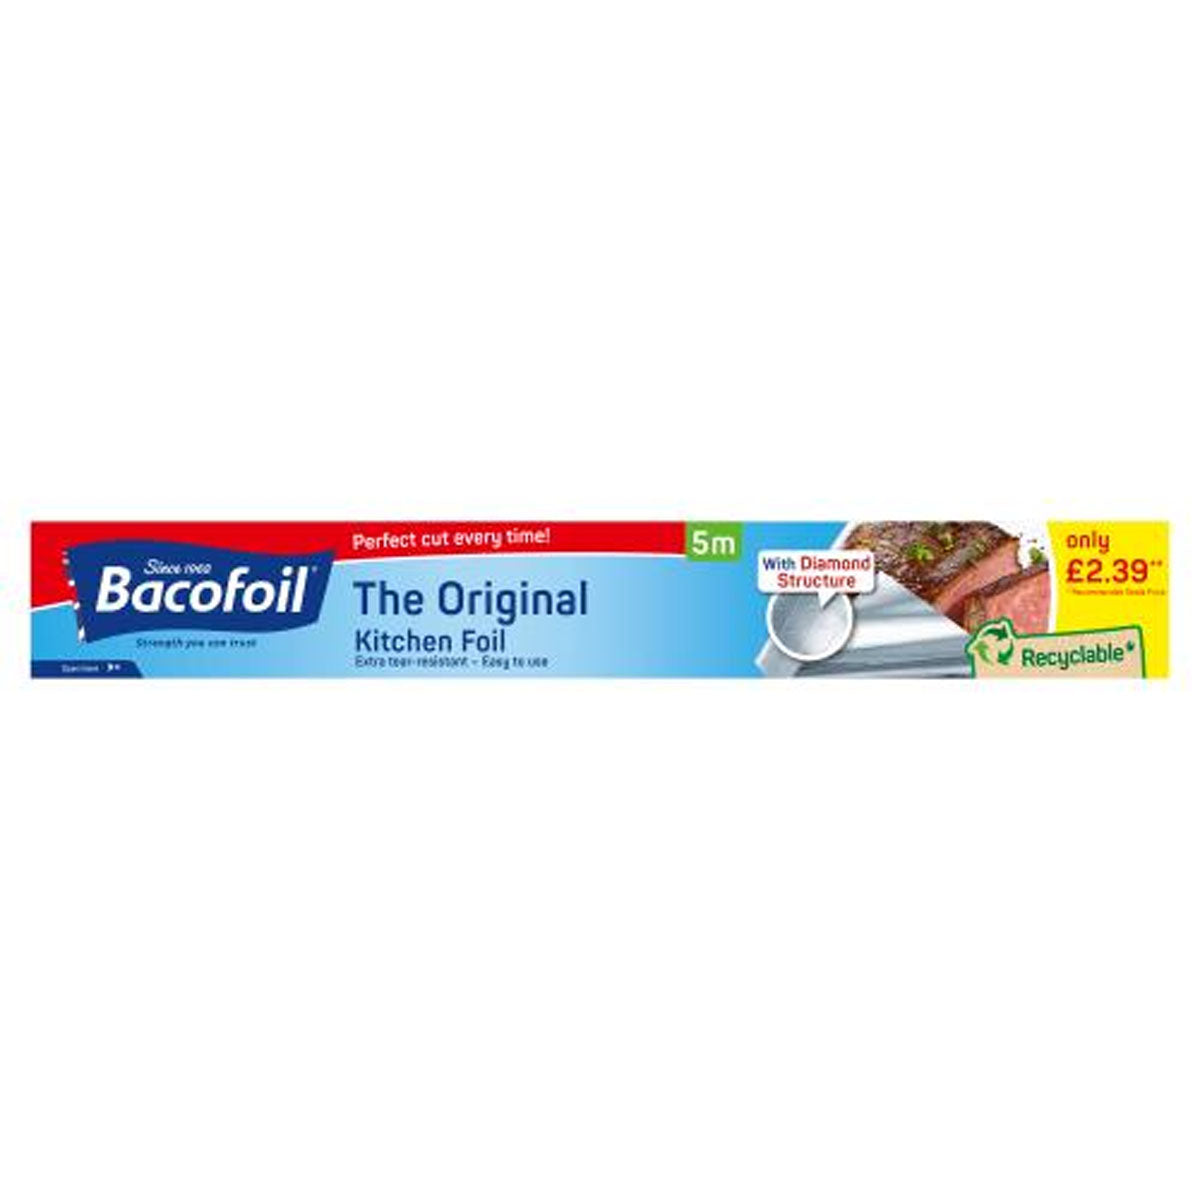 Bacofoil - The Original Kitchen Foil - 5m x 30cm - Continental Food Store